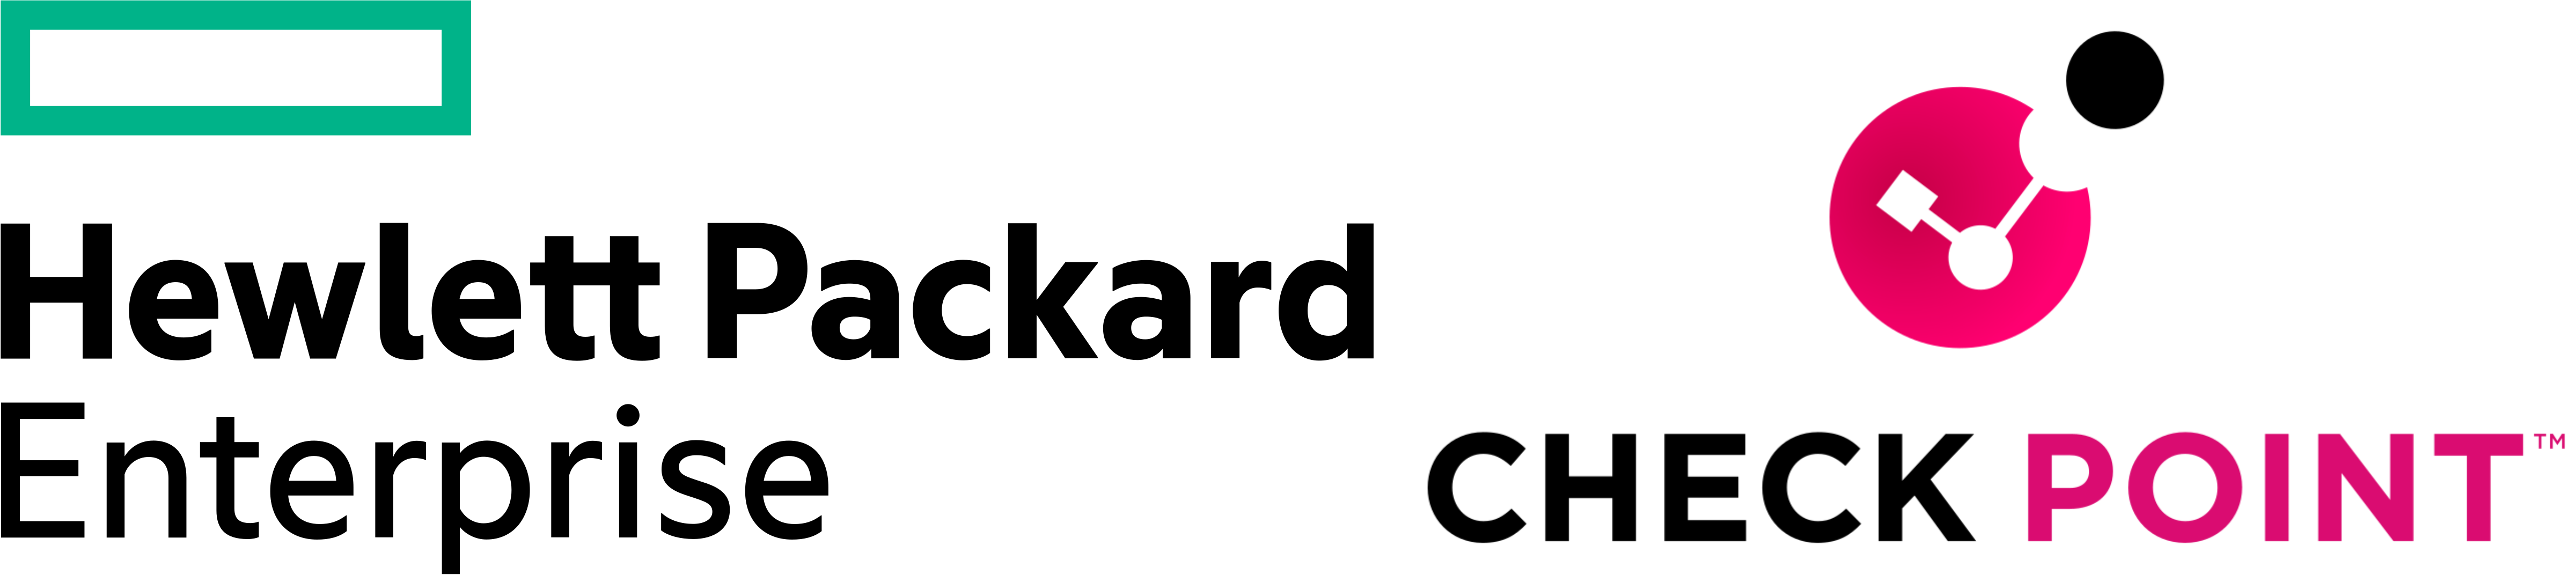 HPE-logo